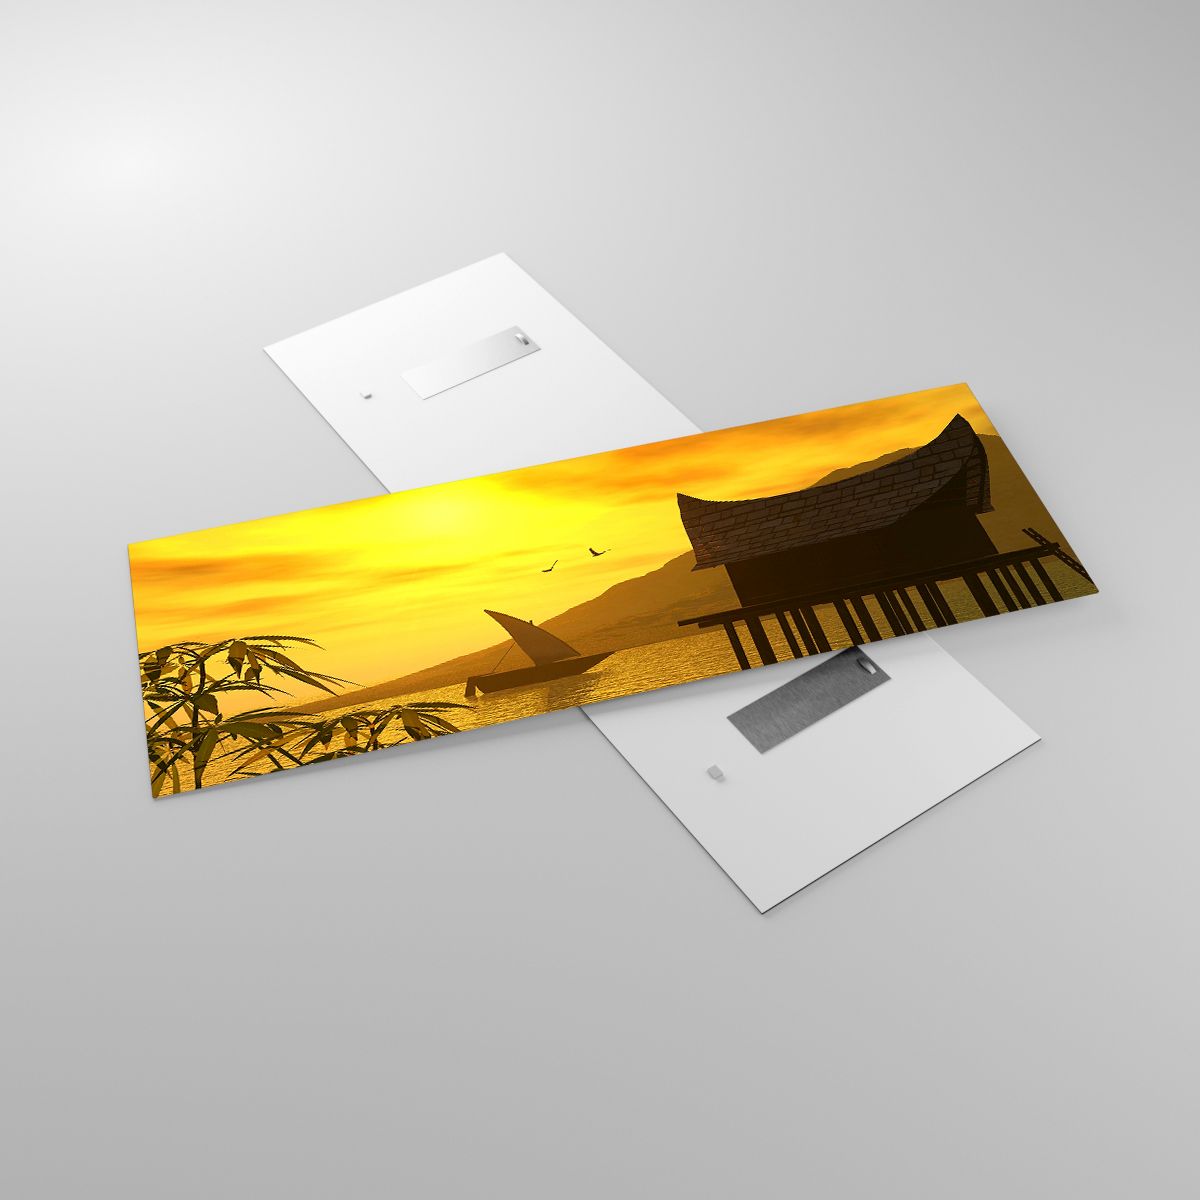 Glasbild Landschaft, Glasbild Der Sonnenuntergang, Glasbild Asien, Glasbild Natur, Glasbild Meer